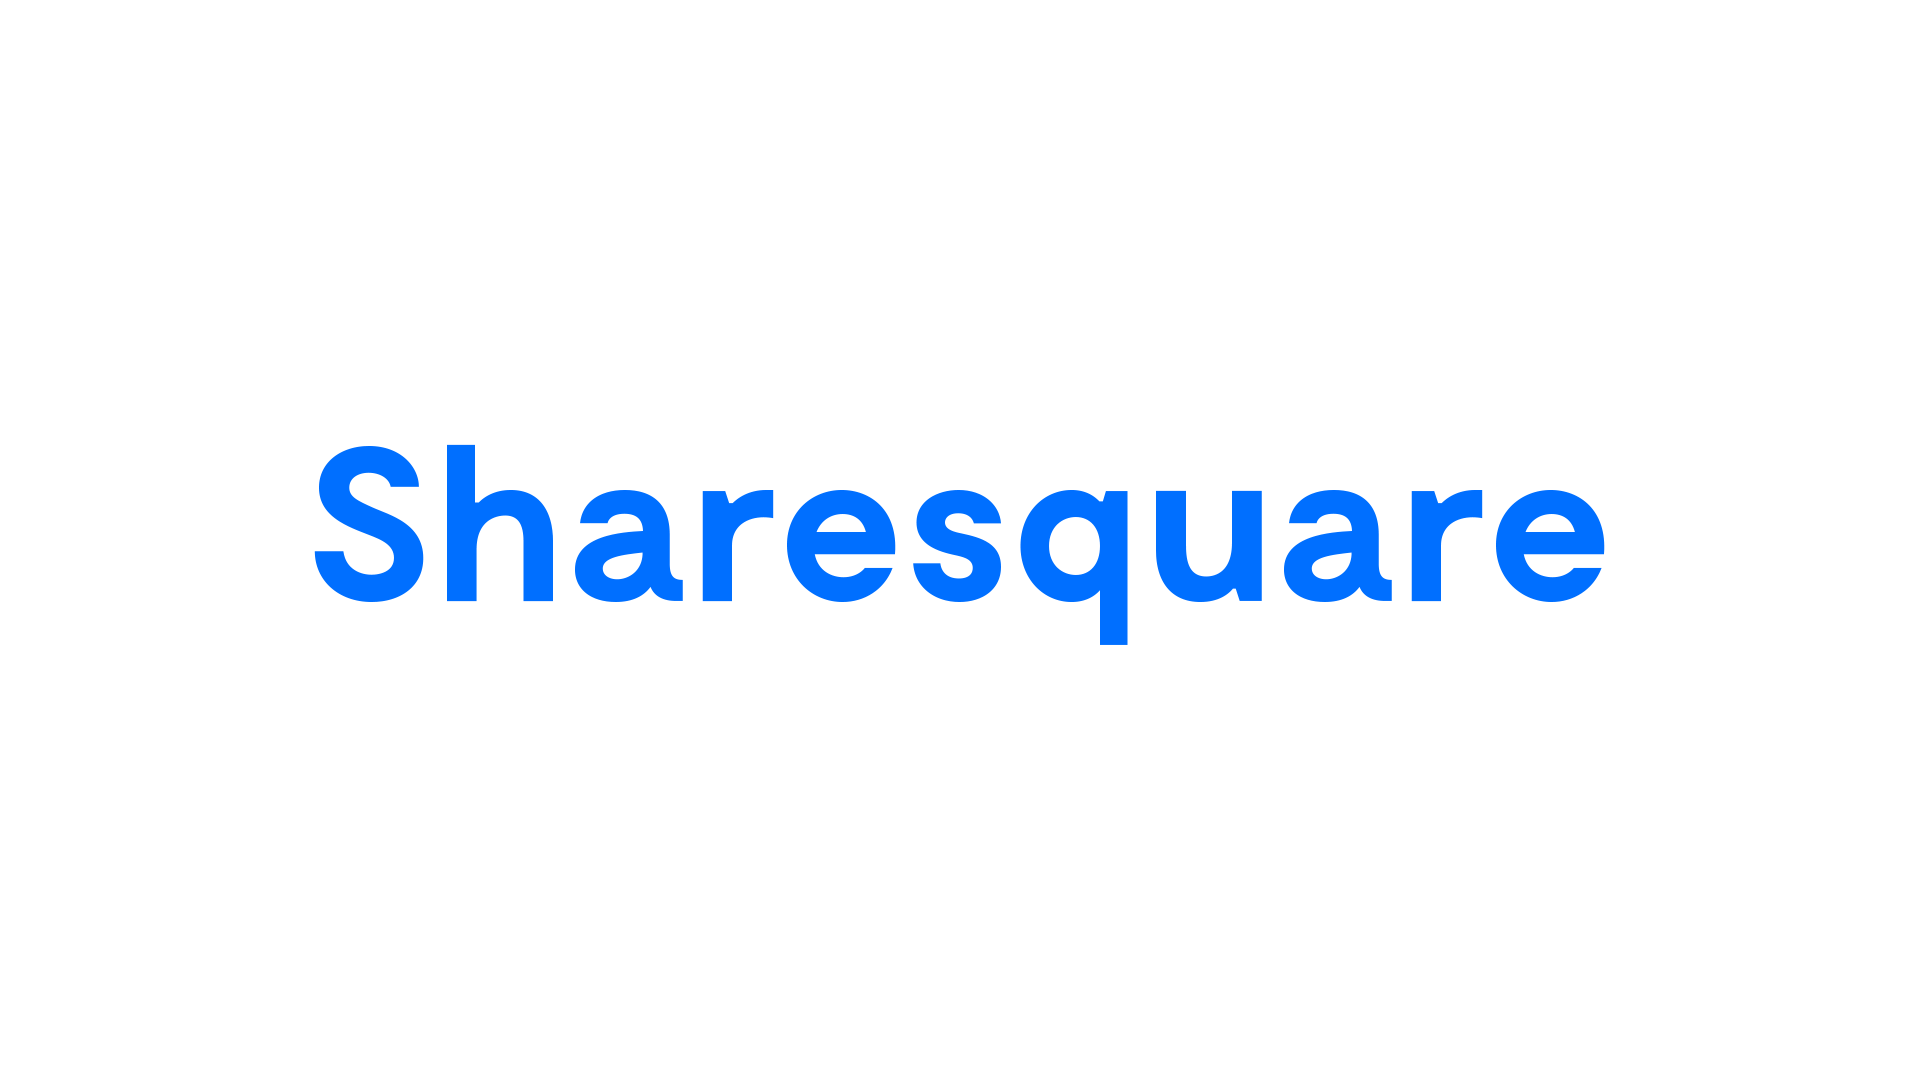 Sharesquare